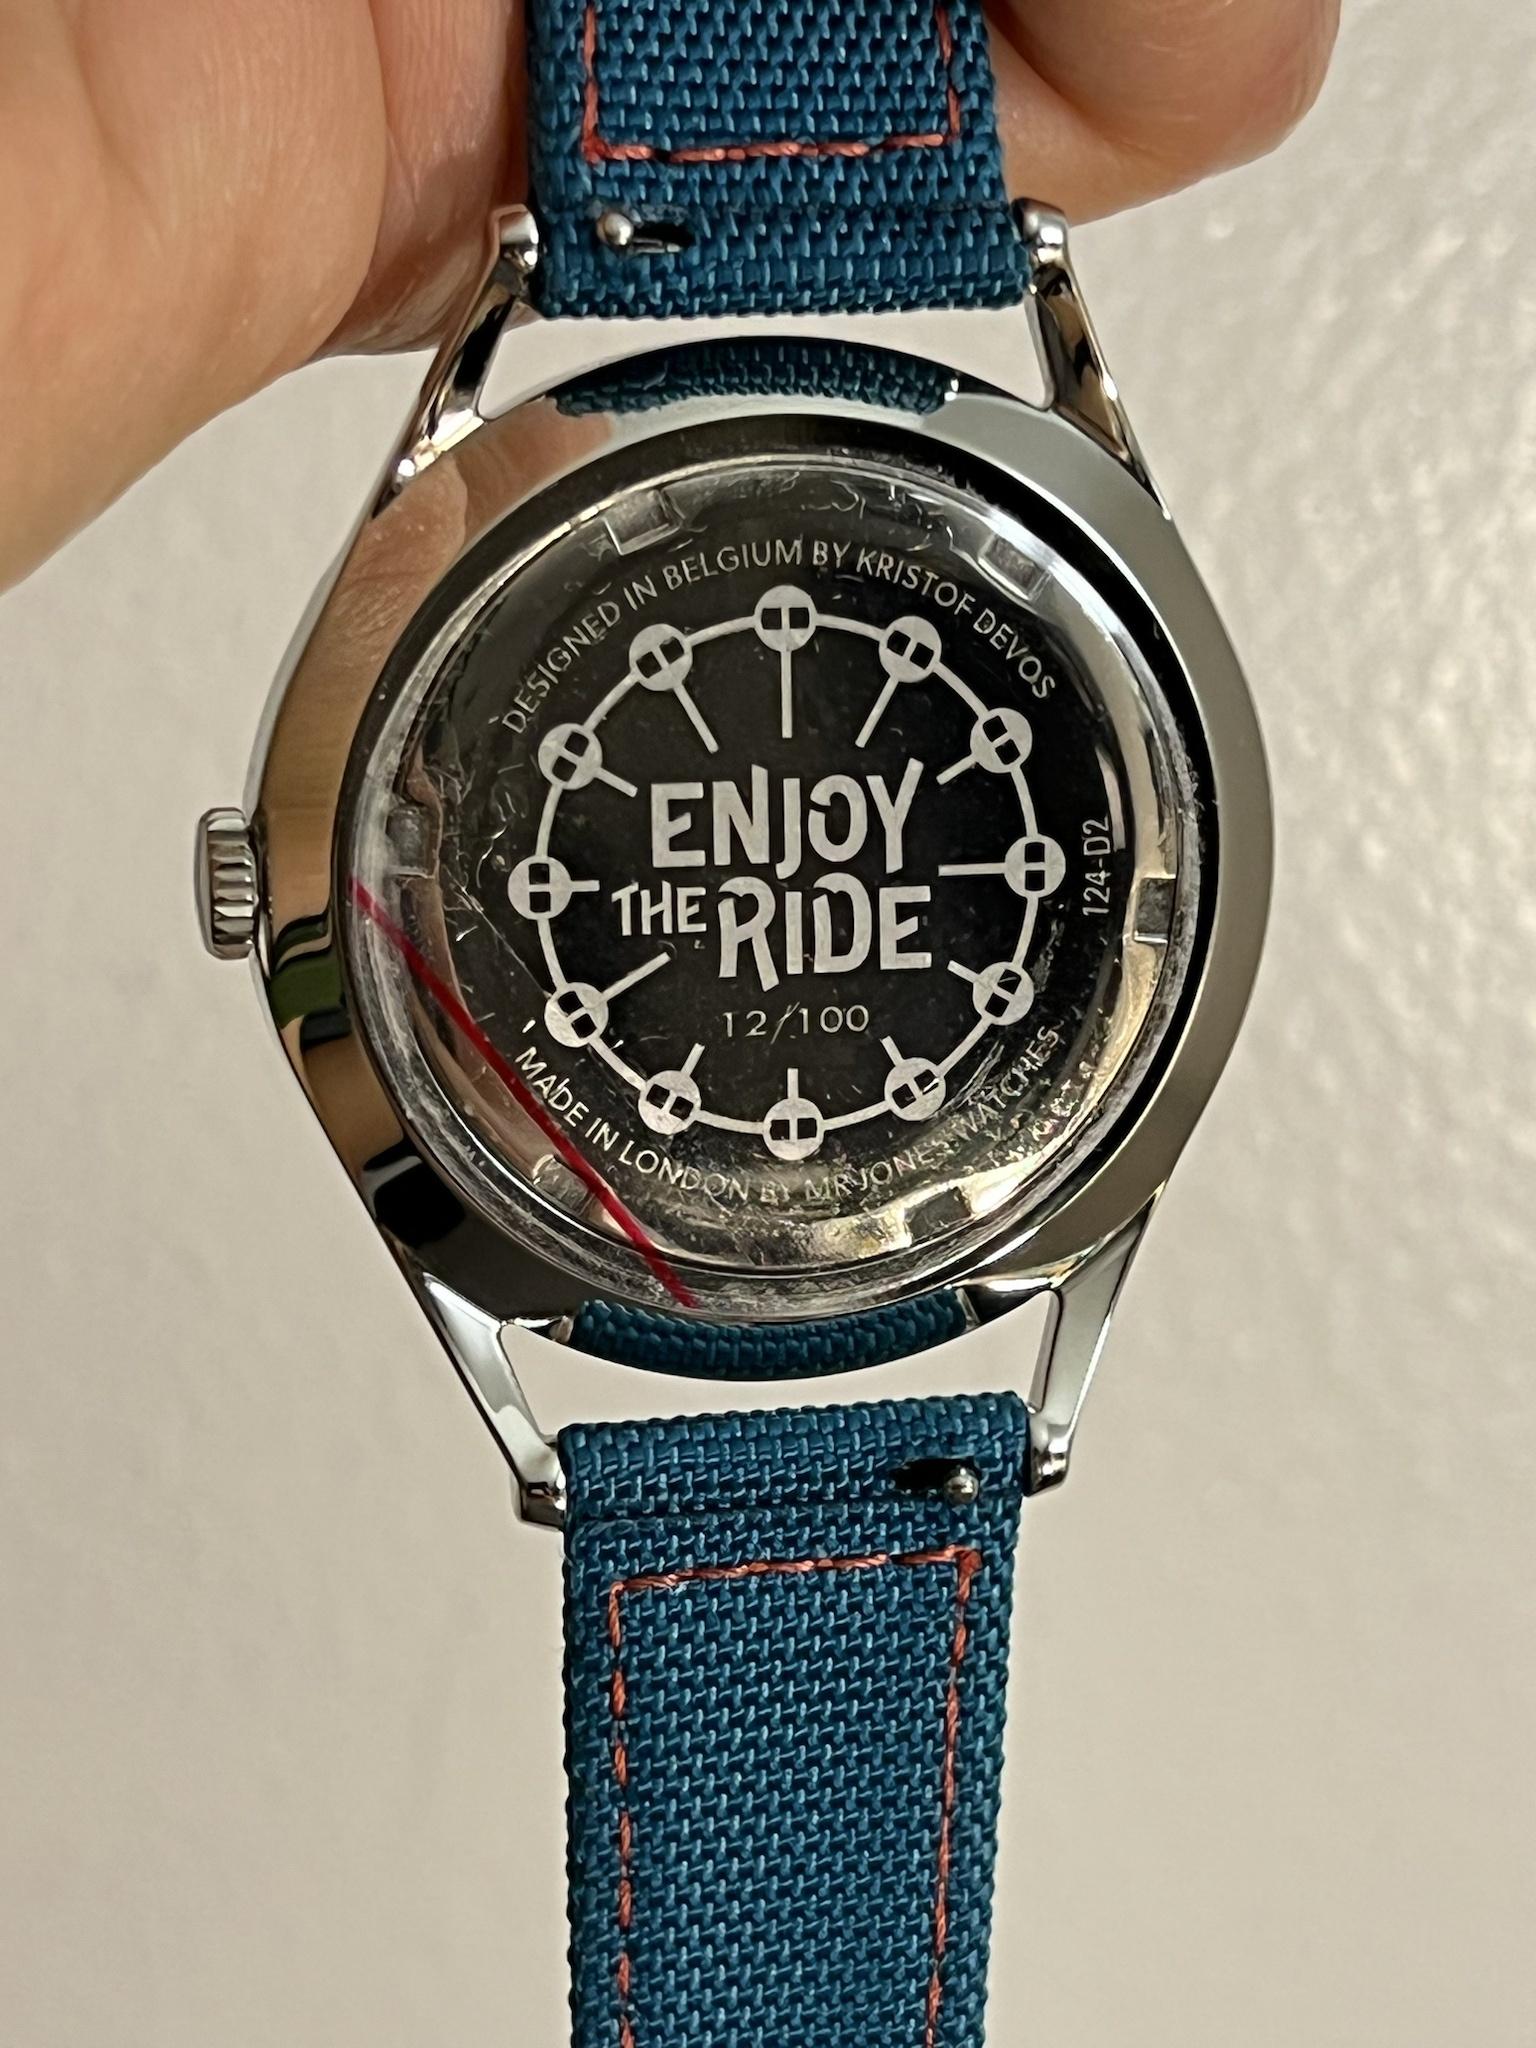 経典ブランド Mr Jones Watches（Enjoy the ride） - メンズ